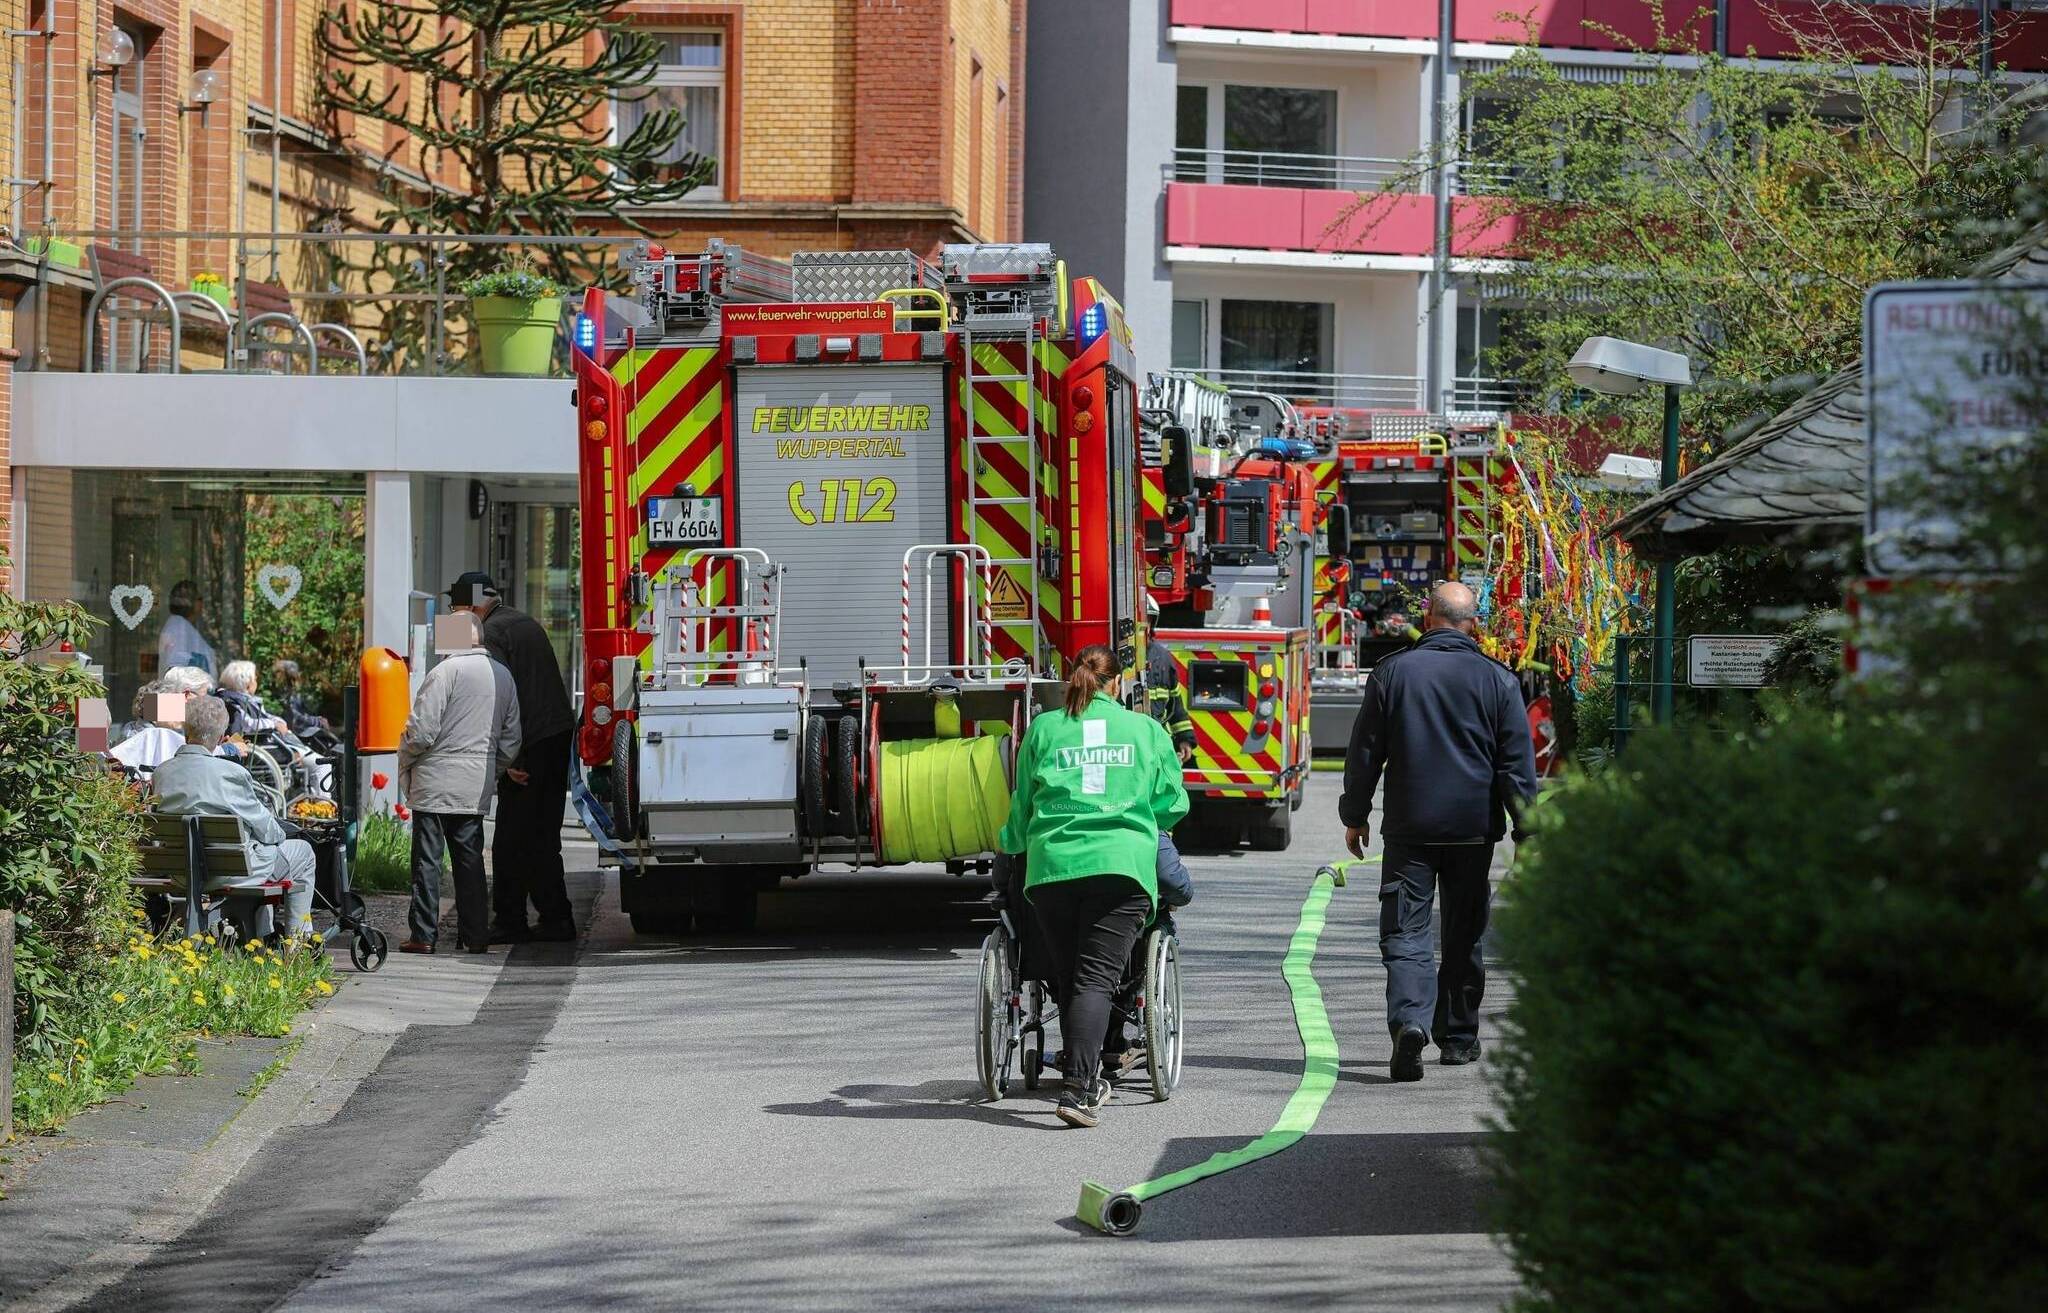 Brand in Alten- und Pflegeheim-Hochhaus​ in Wuppertal